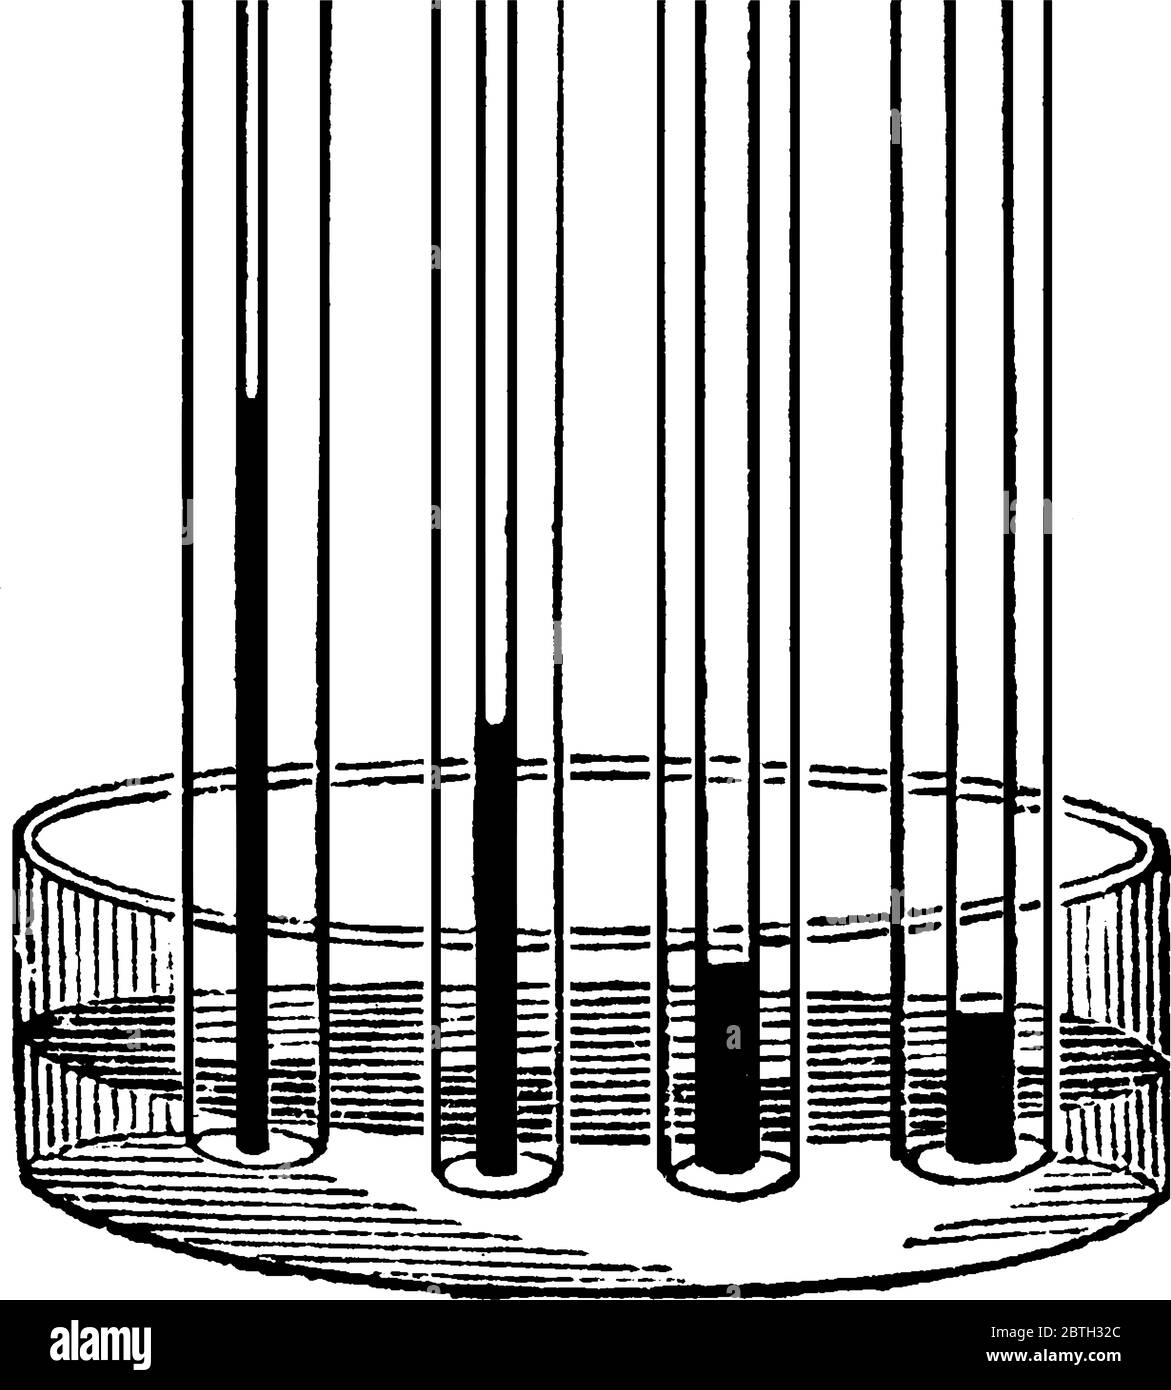 Una rappresentazione tipica di tubi capillari di varie larghezze, contenenti diversi livelli o altezze di liquido in esso, disegno di linea vintage o incisioni Illustrazione Vettoriale